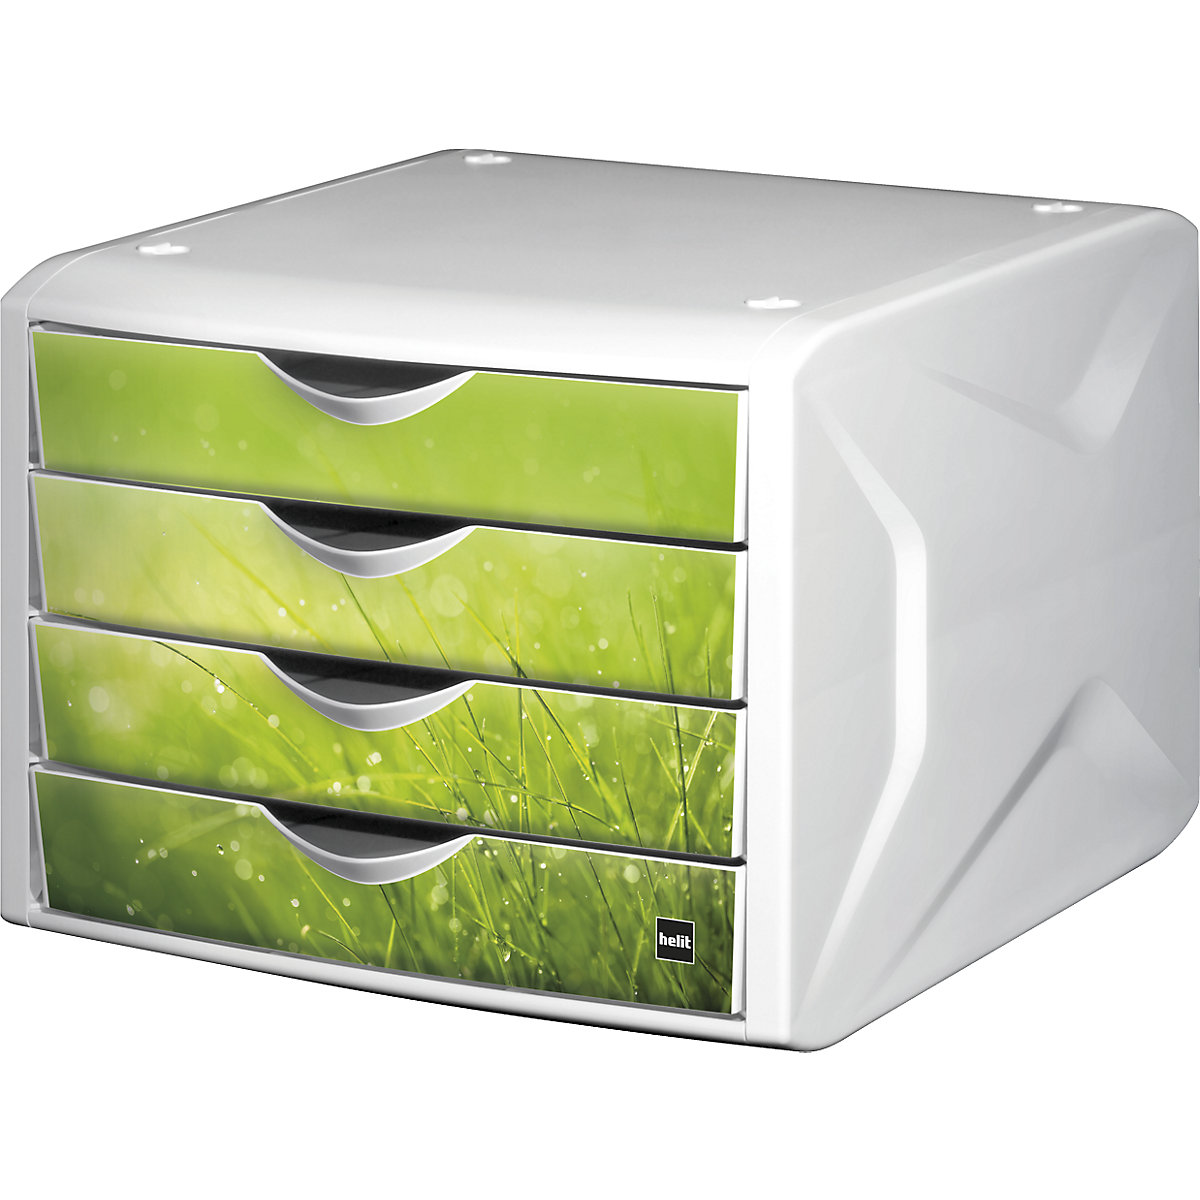 Zásuvkový box – helit, v x š x h 212 x 262 x 330 mm, OJ 5 ks, dizajn zásuvky springtime-3